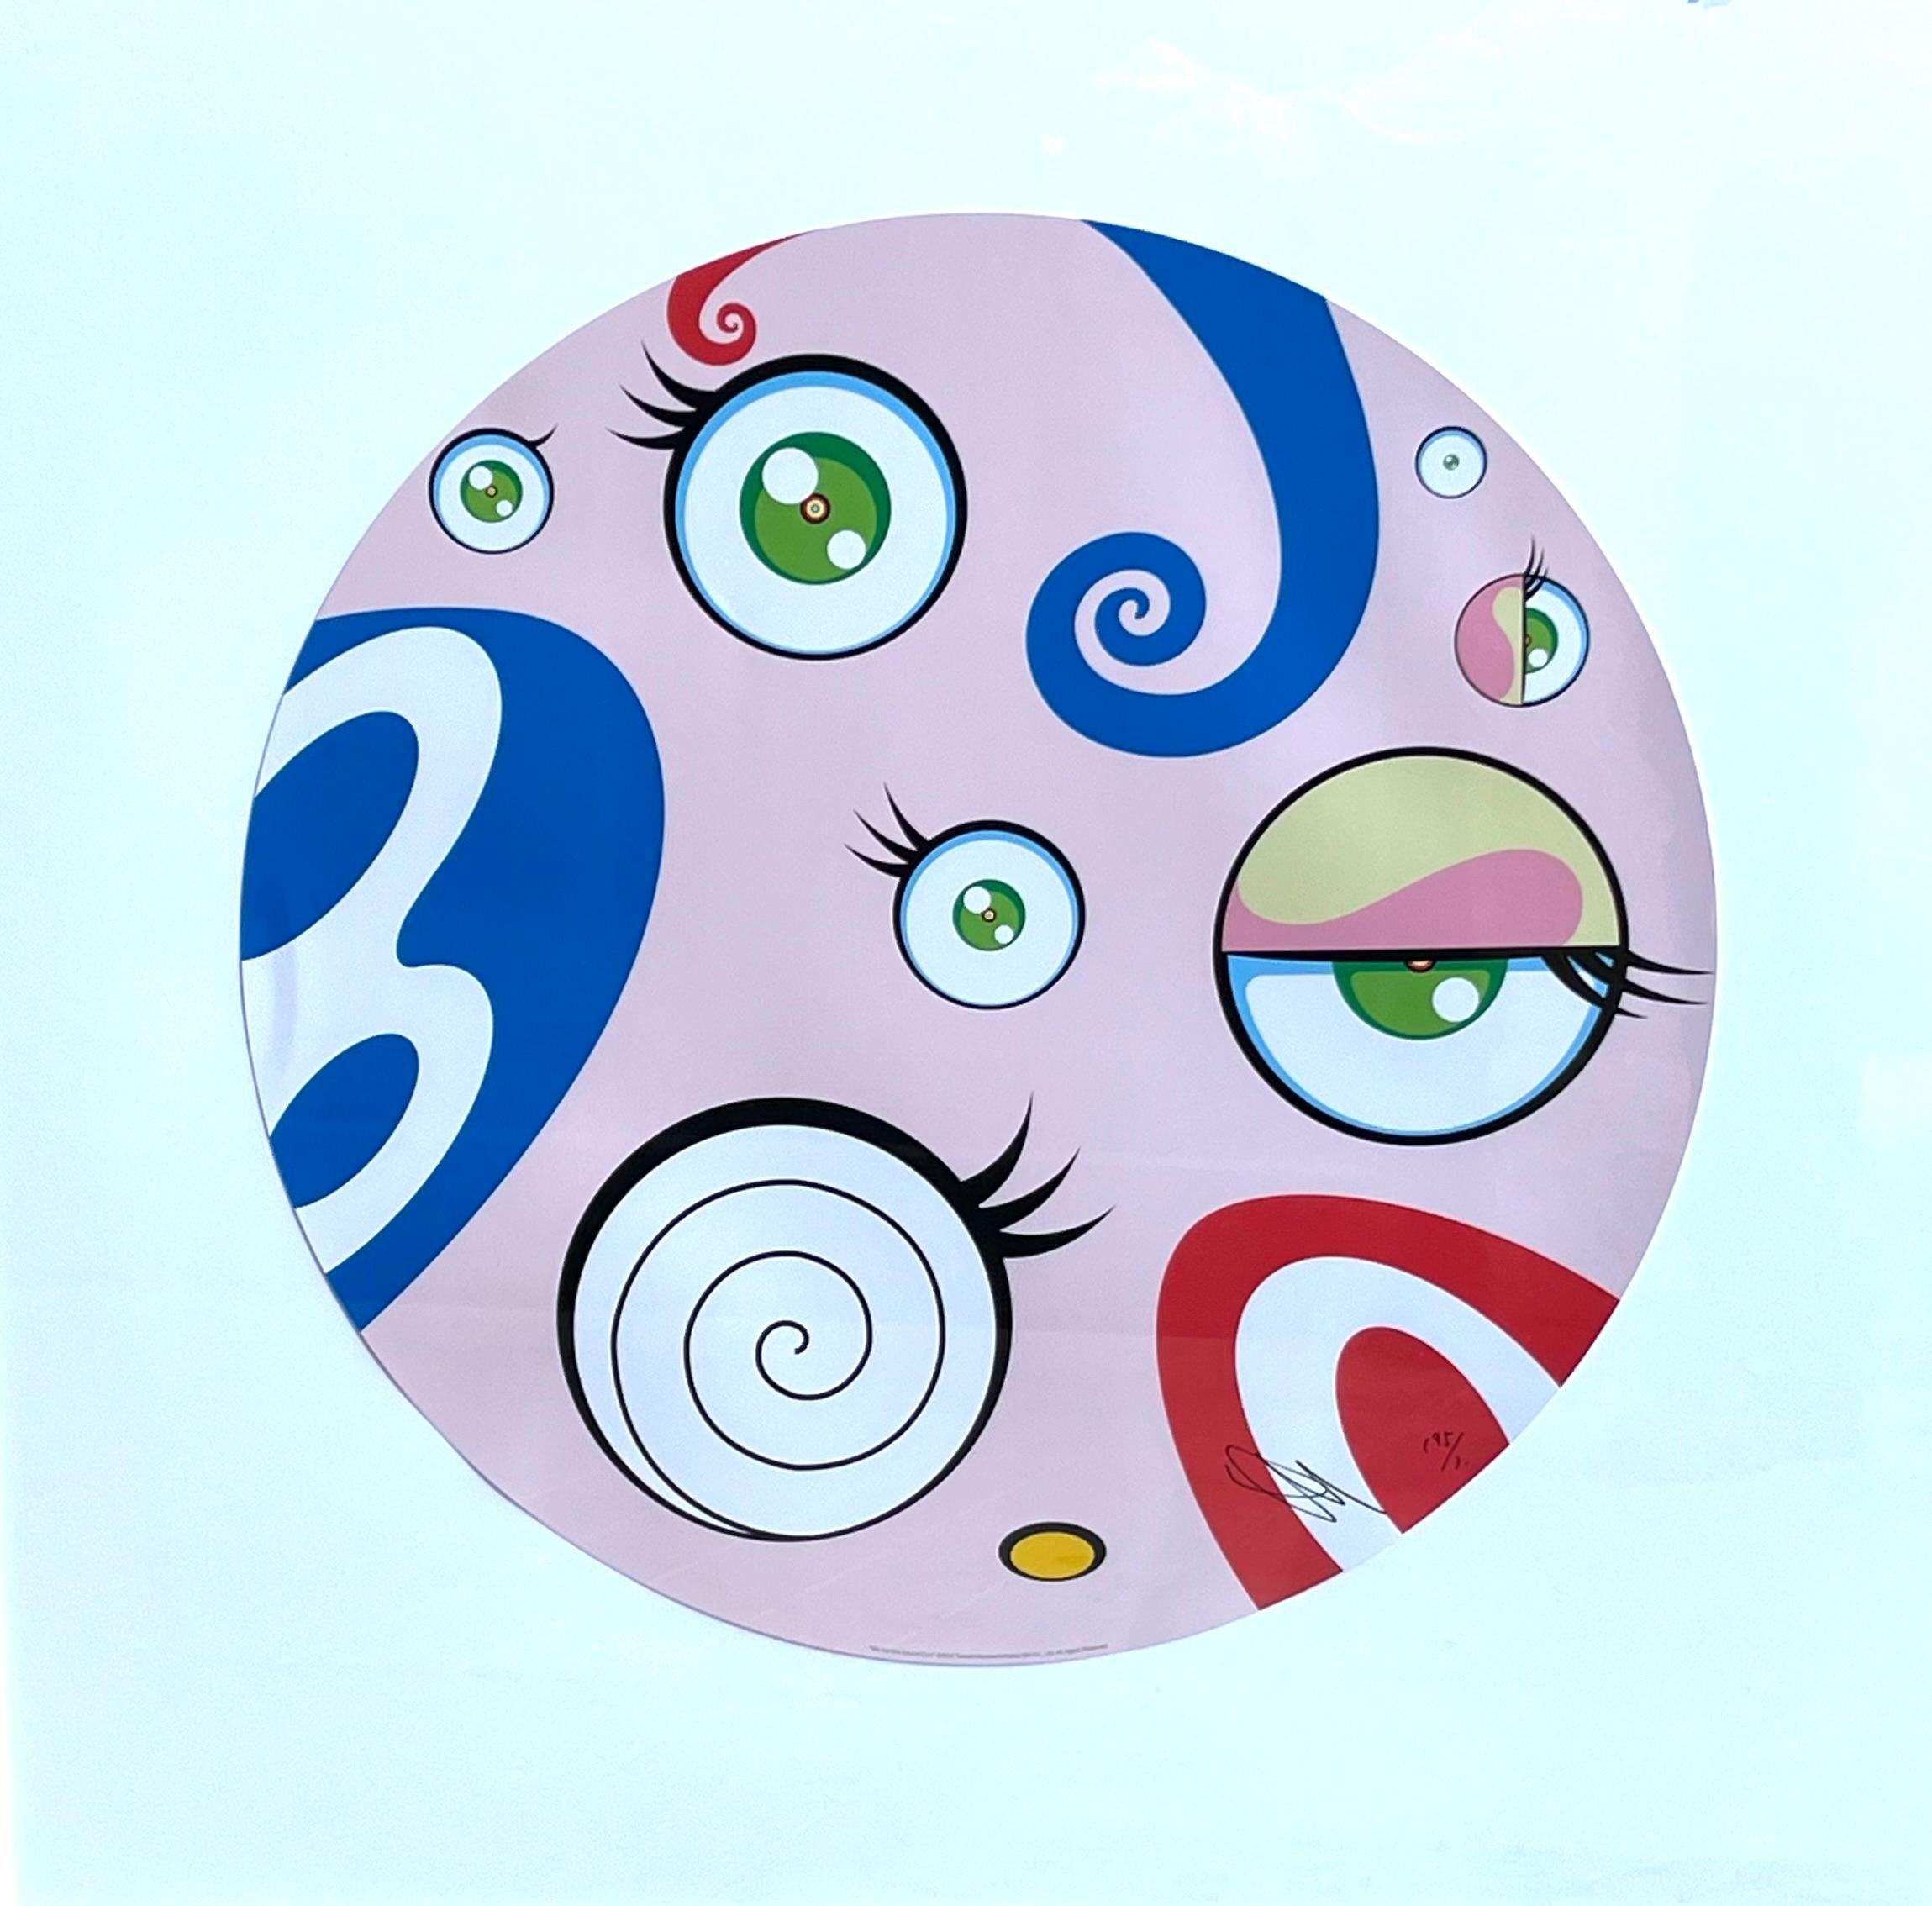 Figurative Print de Takashi Murakami - Somos el clan jocoso - Grabado, Firmado y numerado, 2018